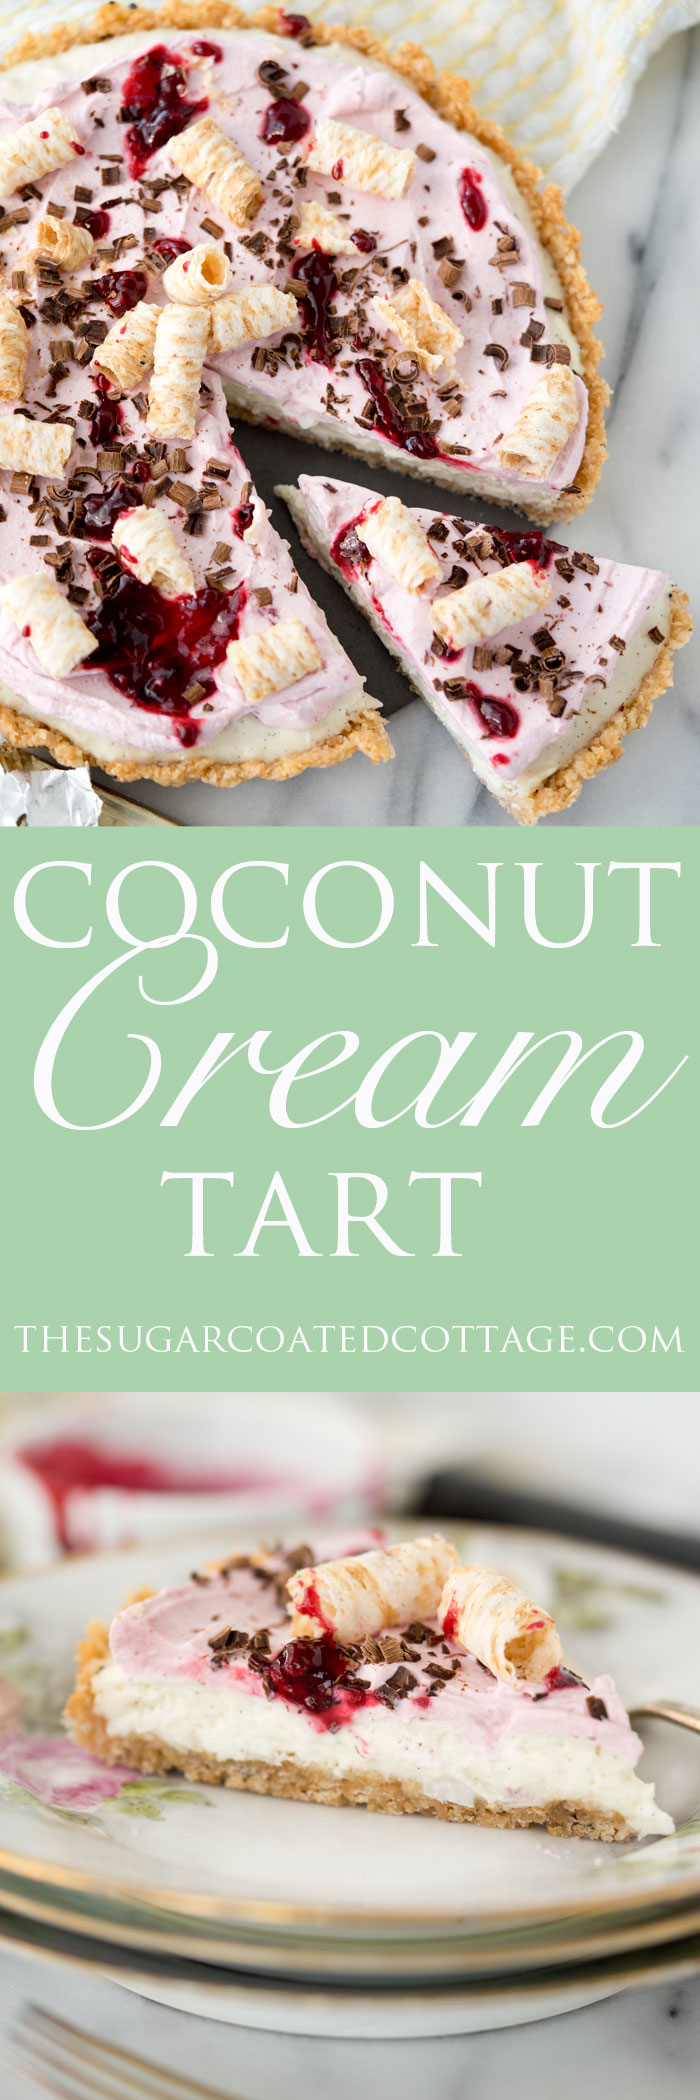 coconut cream tart